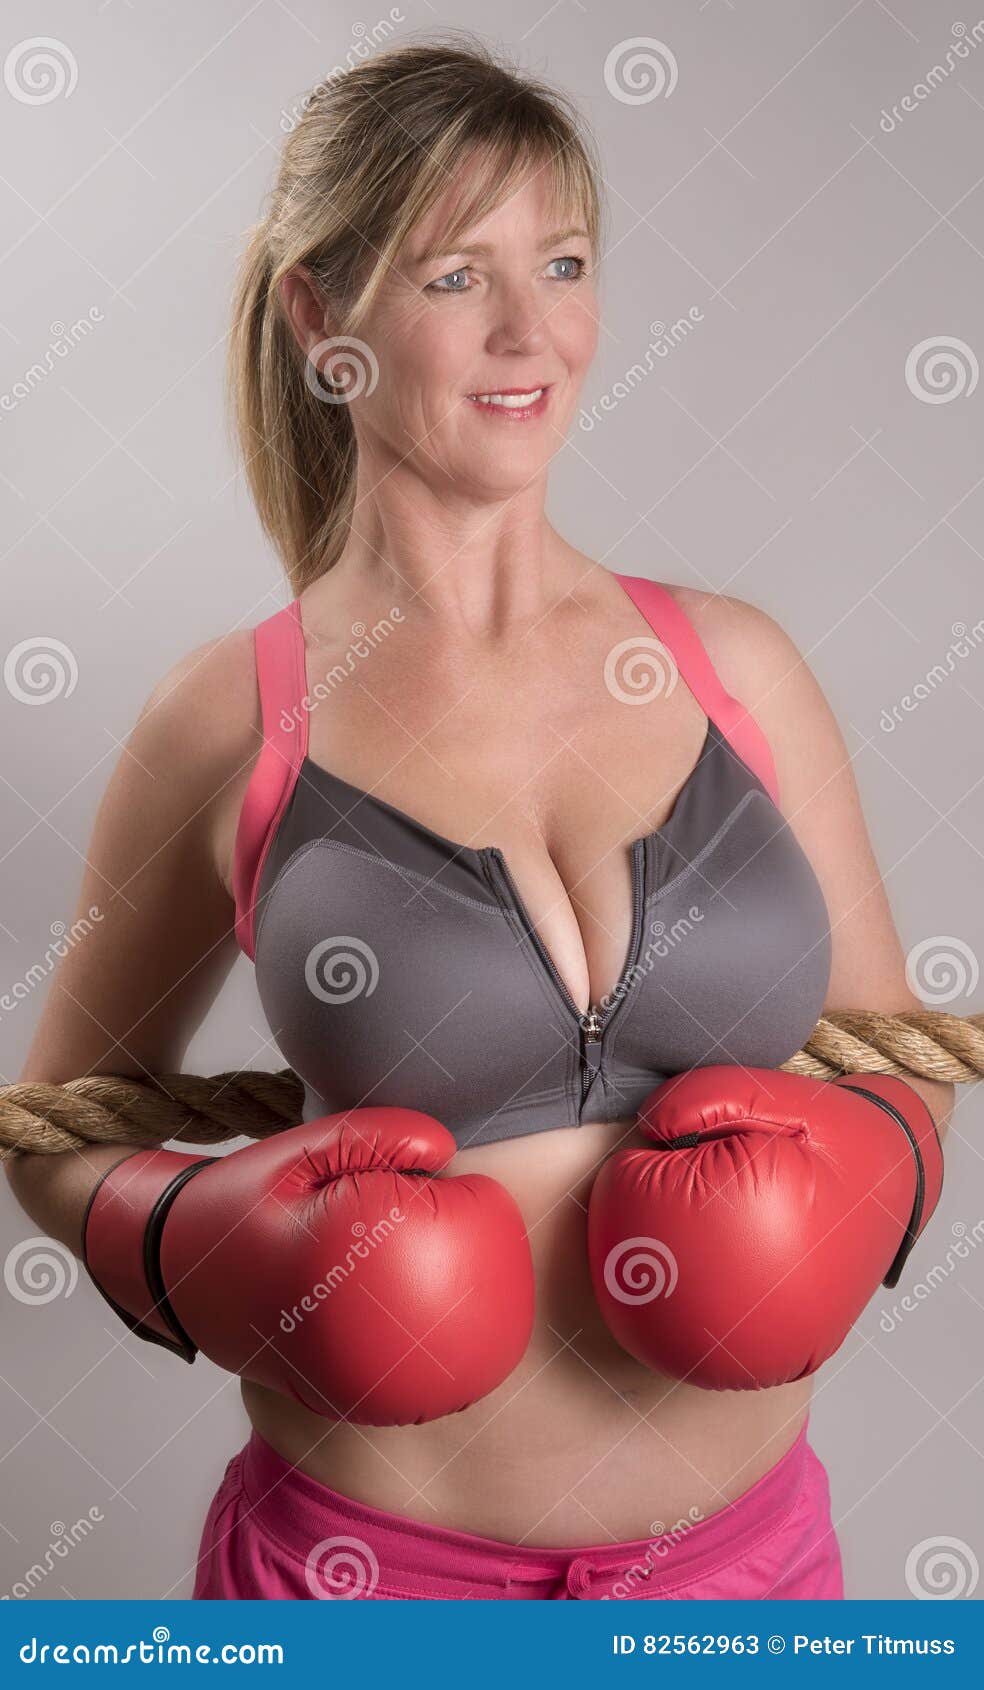 Boxer wearing sports bra stock image. Image of smiling - 82562963